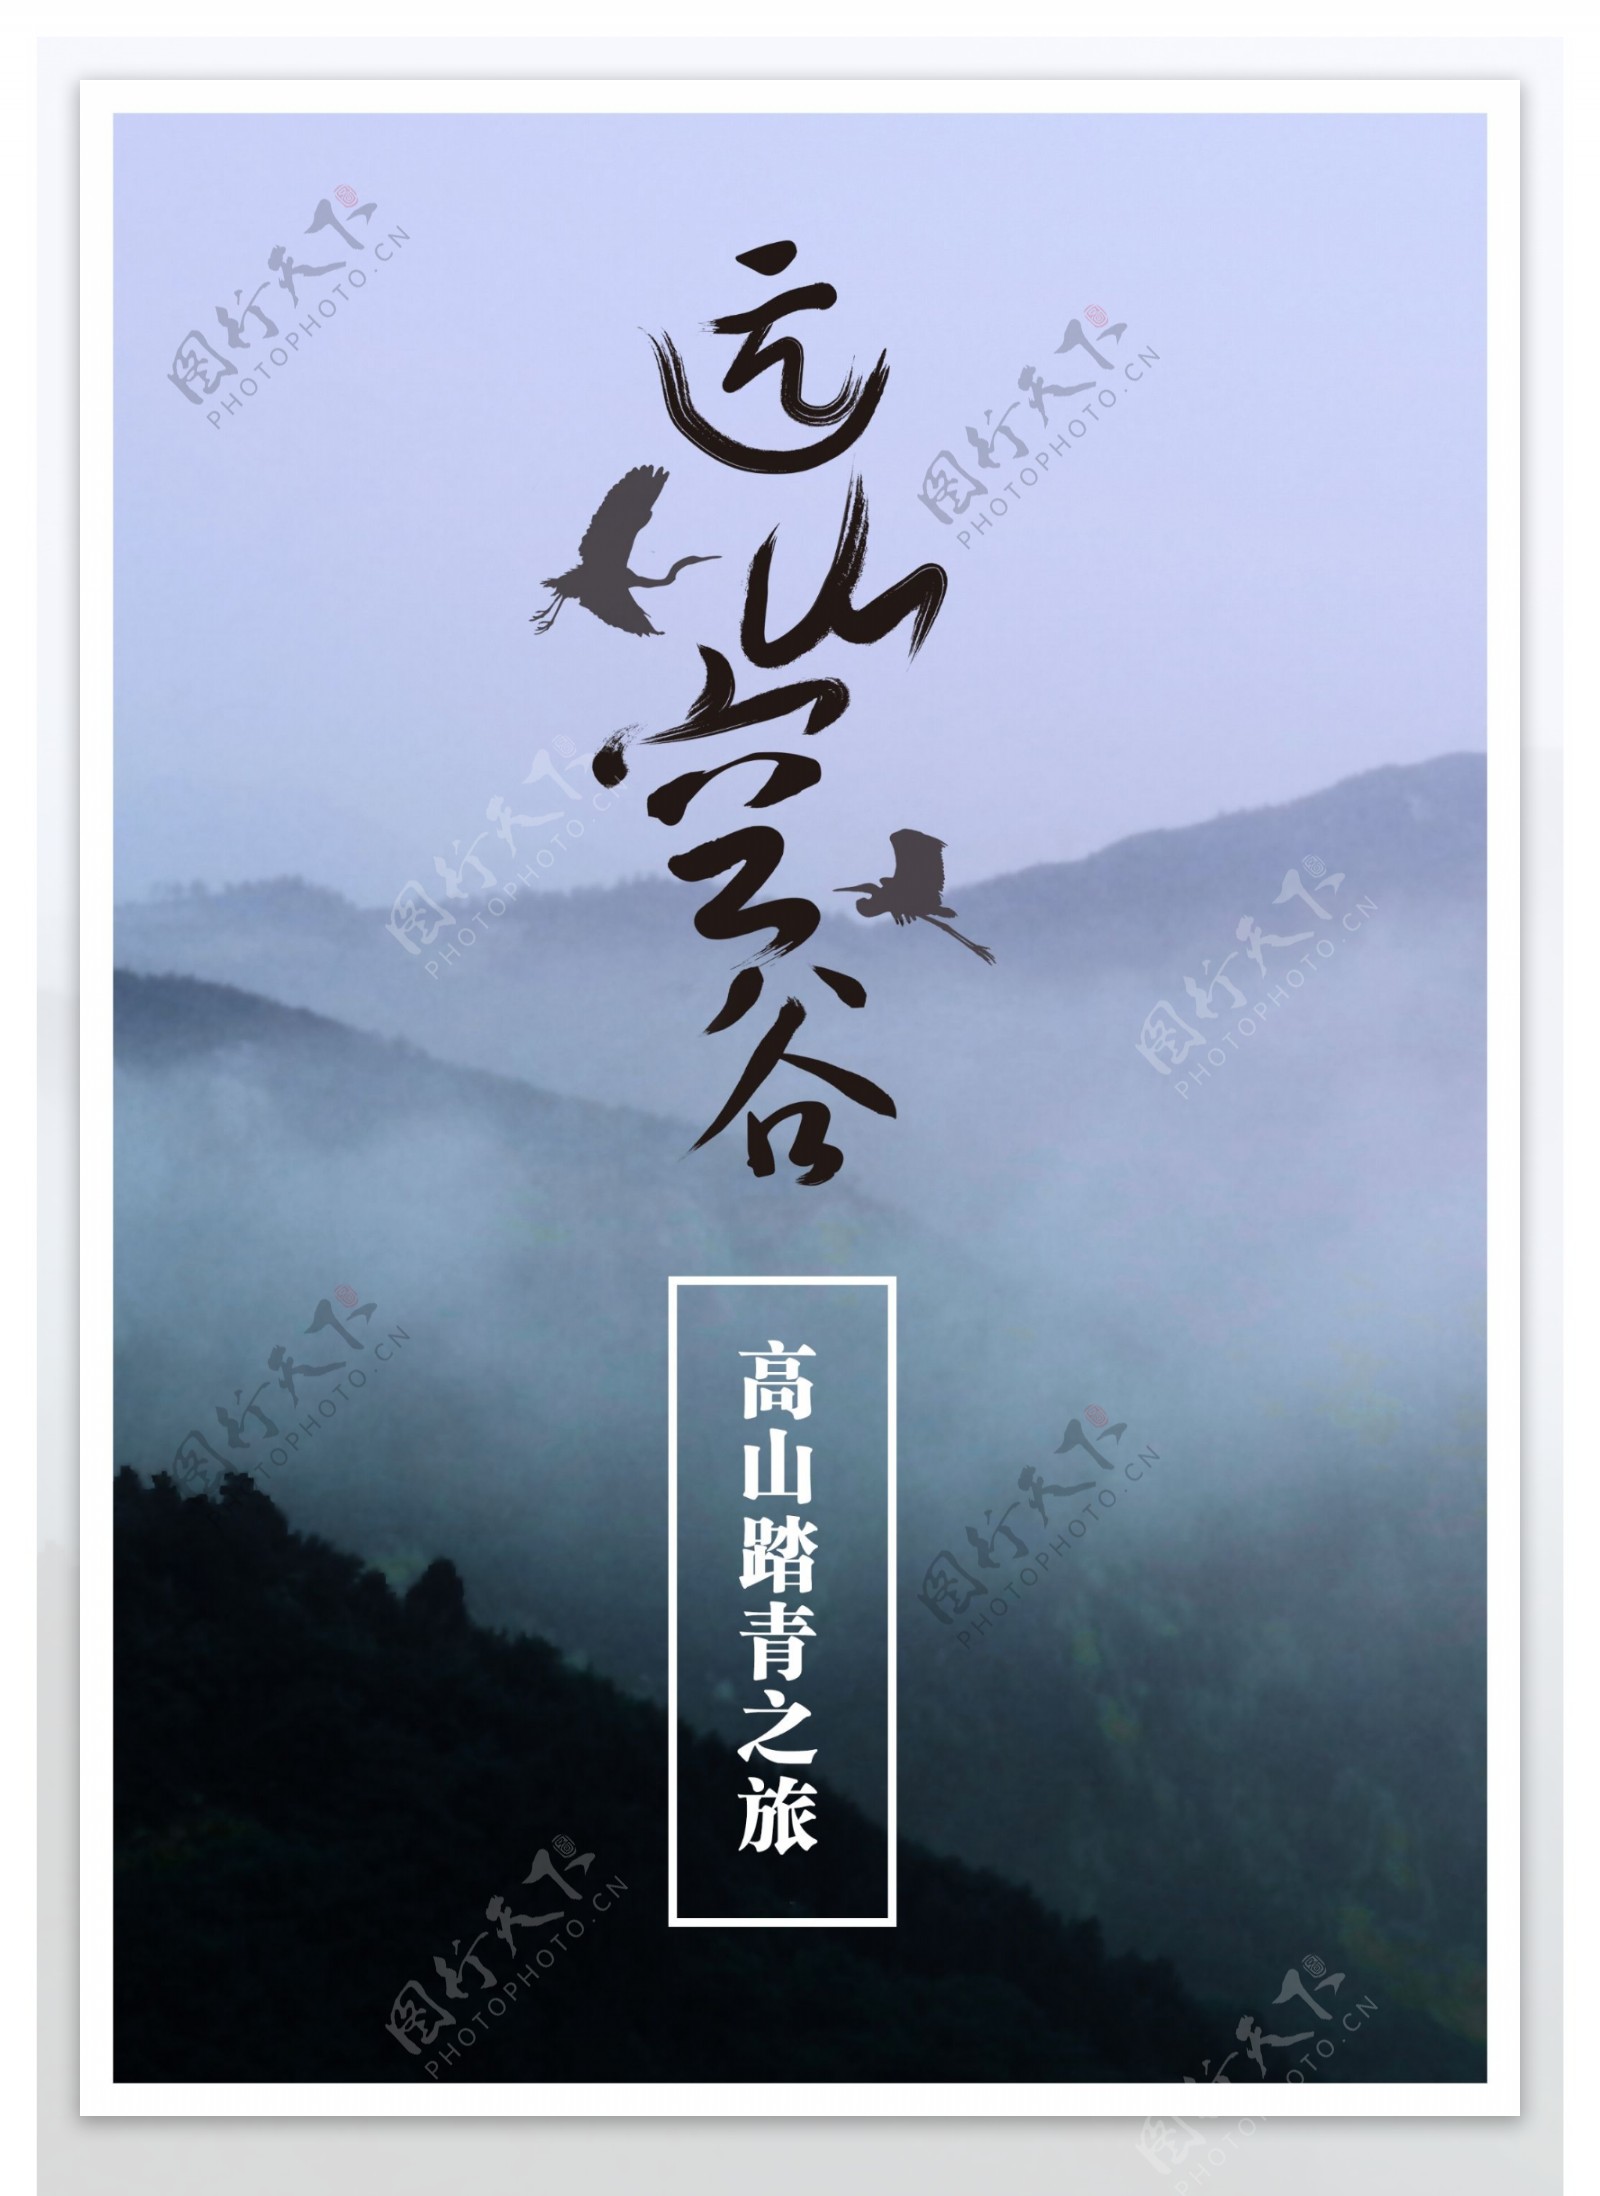 中国风高山踏青之旅旅游海报psd下载